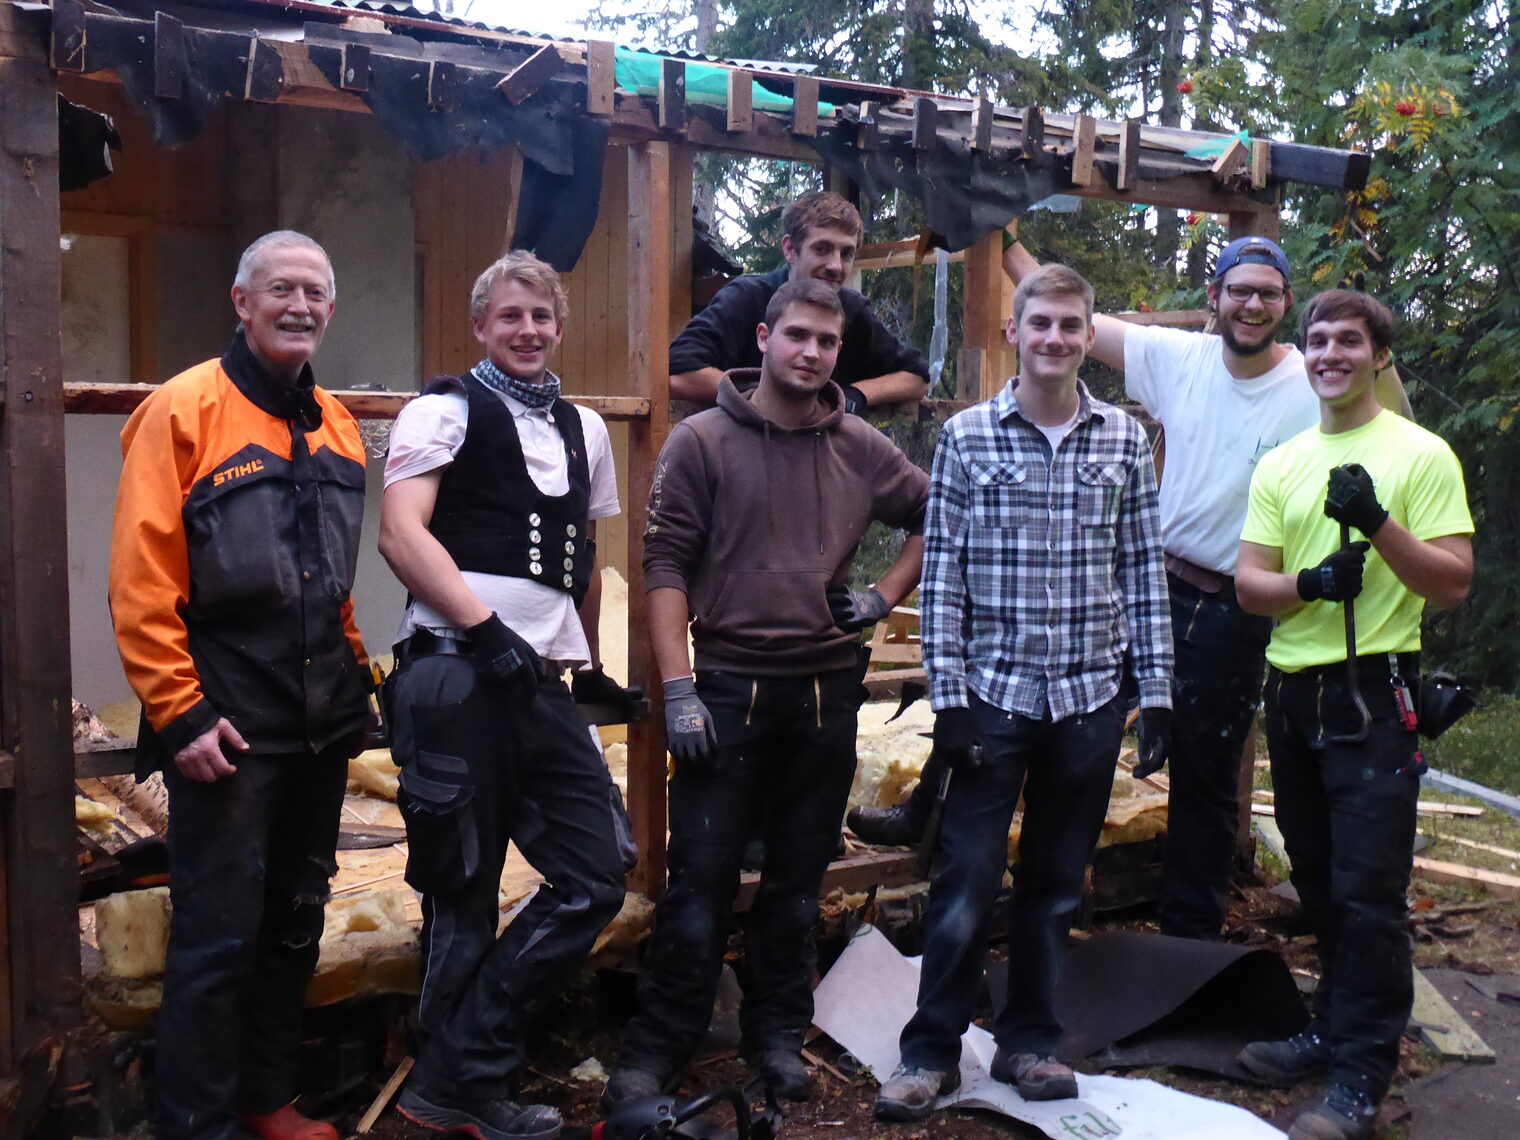 Abriss einer alten Holzhütte und gute Laune nach getaner Arbeit. Links im Bild: Per-Arve Hammer, Manager für Europa-Projekte an der Verdal videregaende skole.